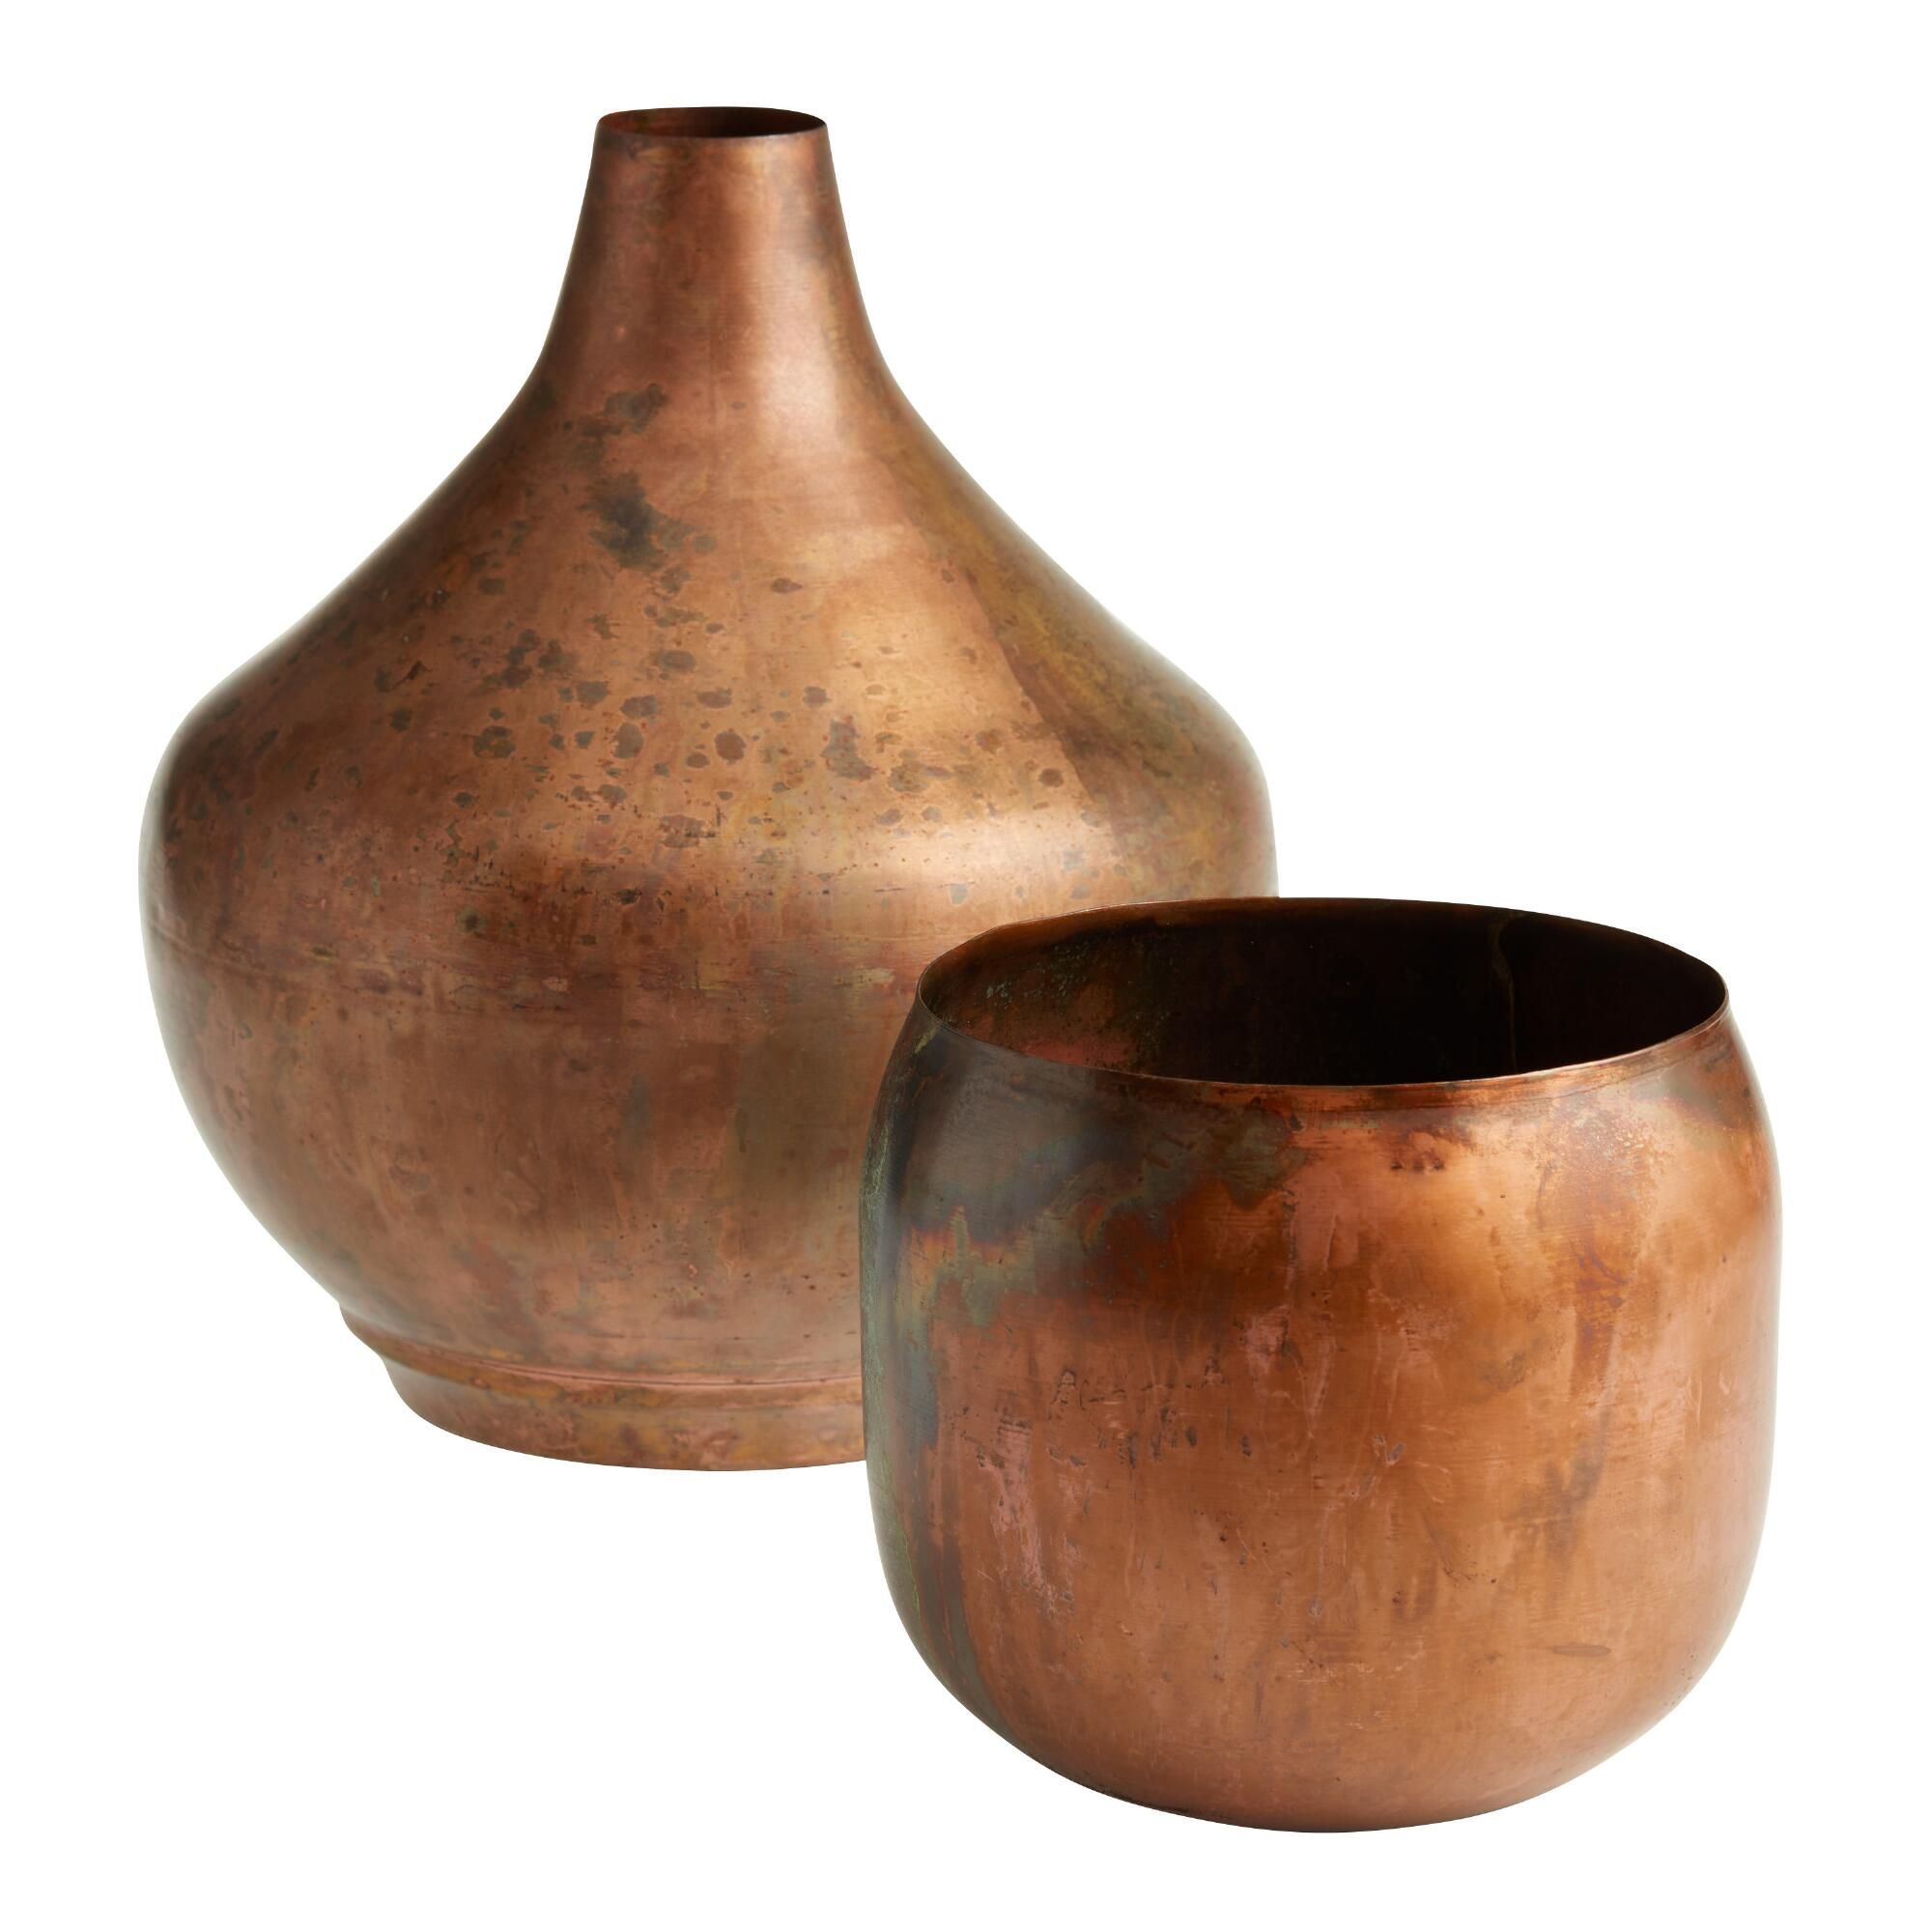 Copper Vintage Patina Metal Vase Collection - World Market | World Market